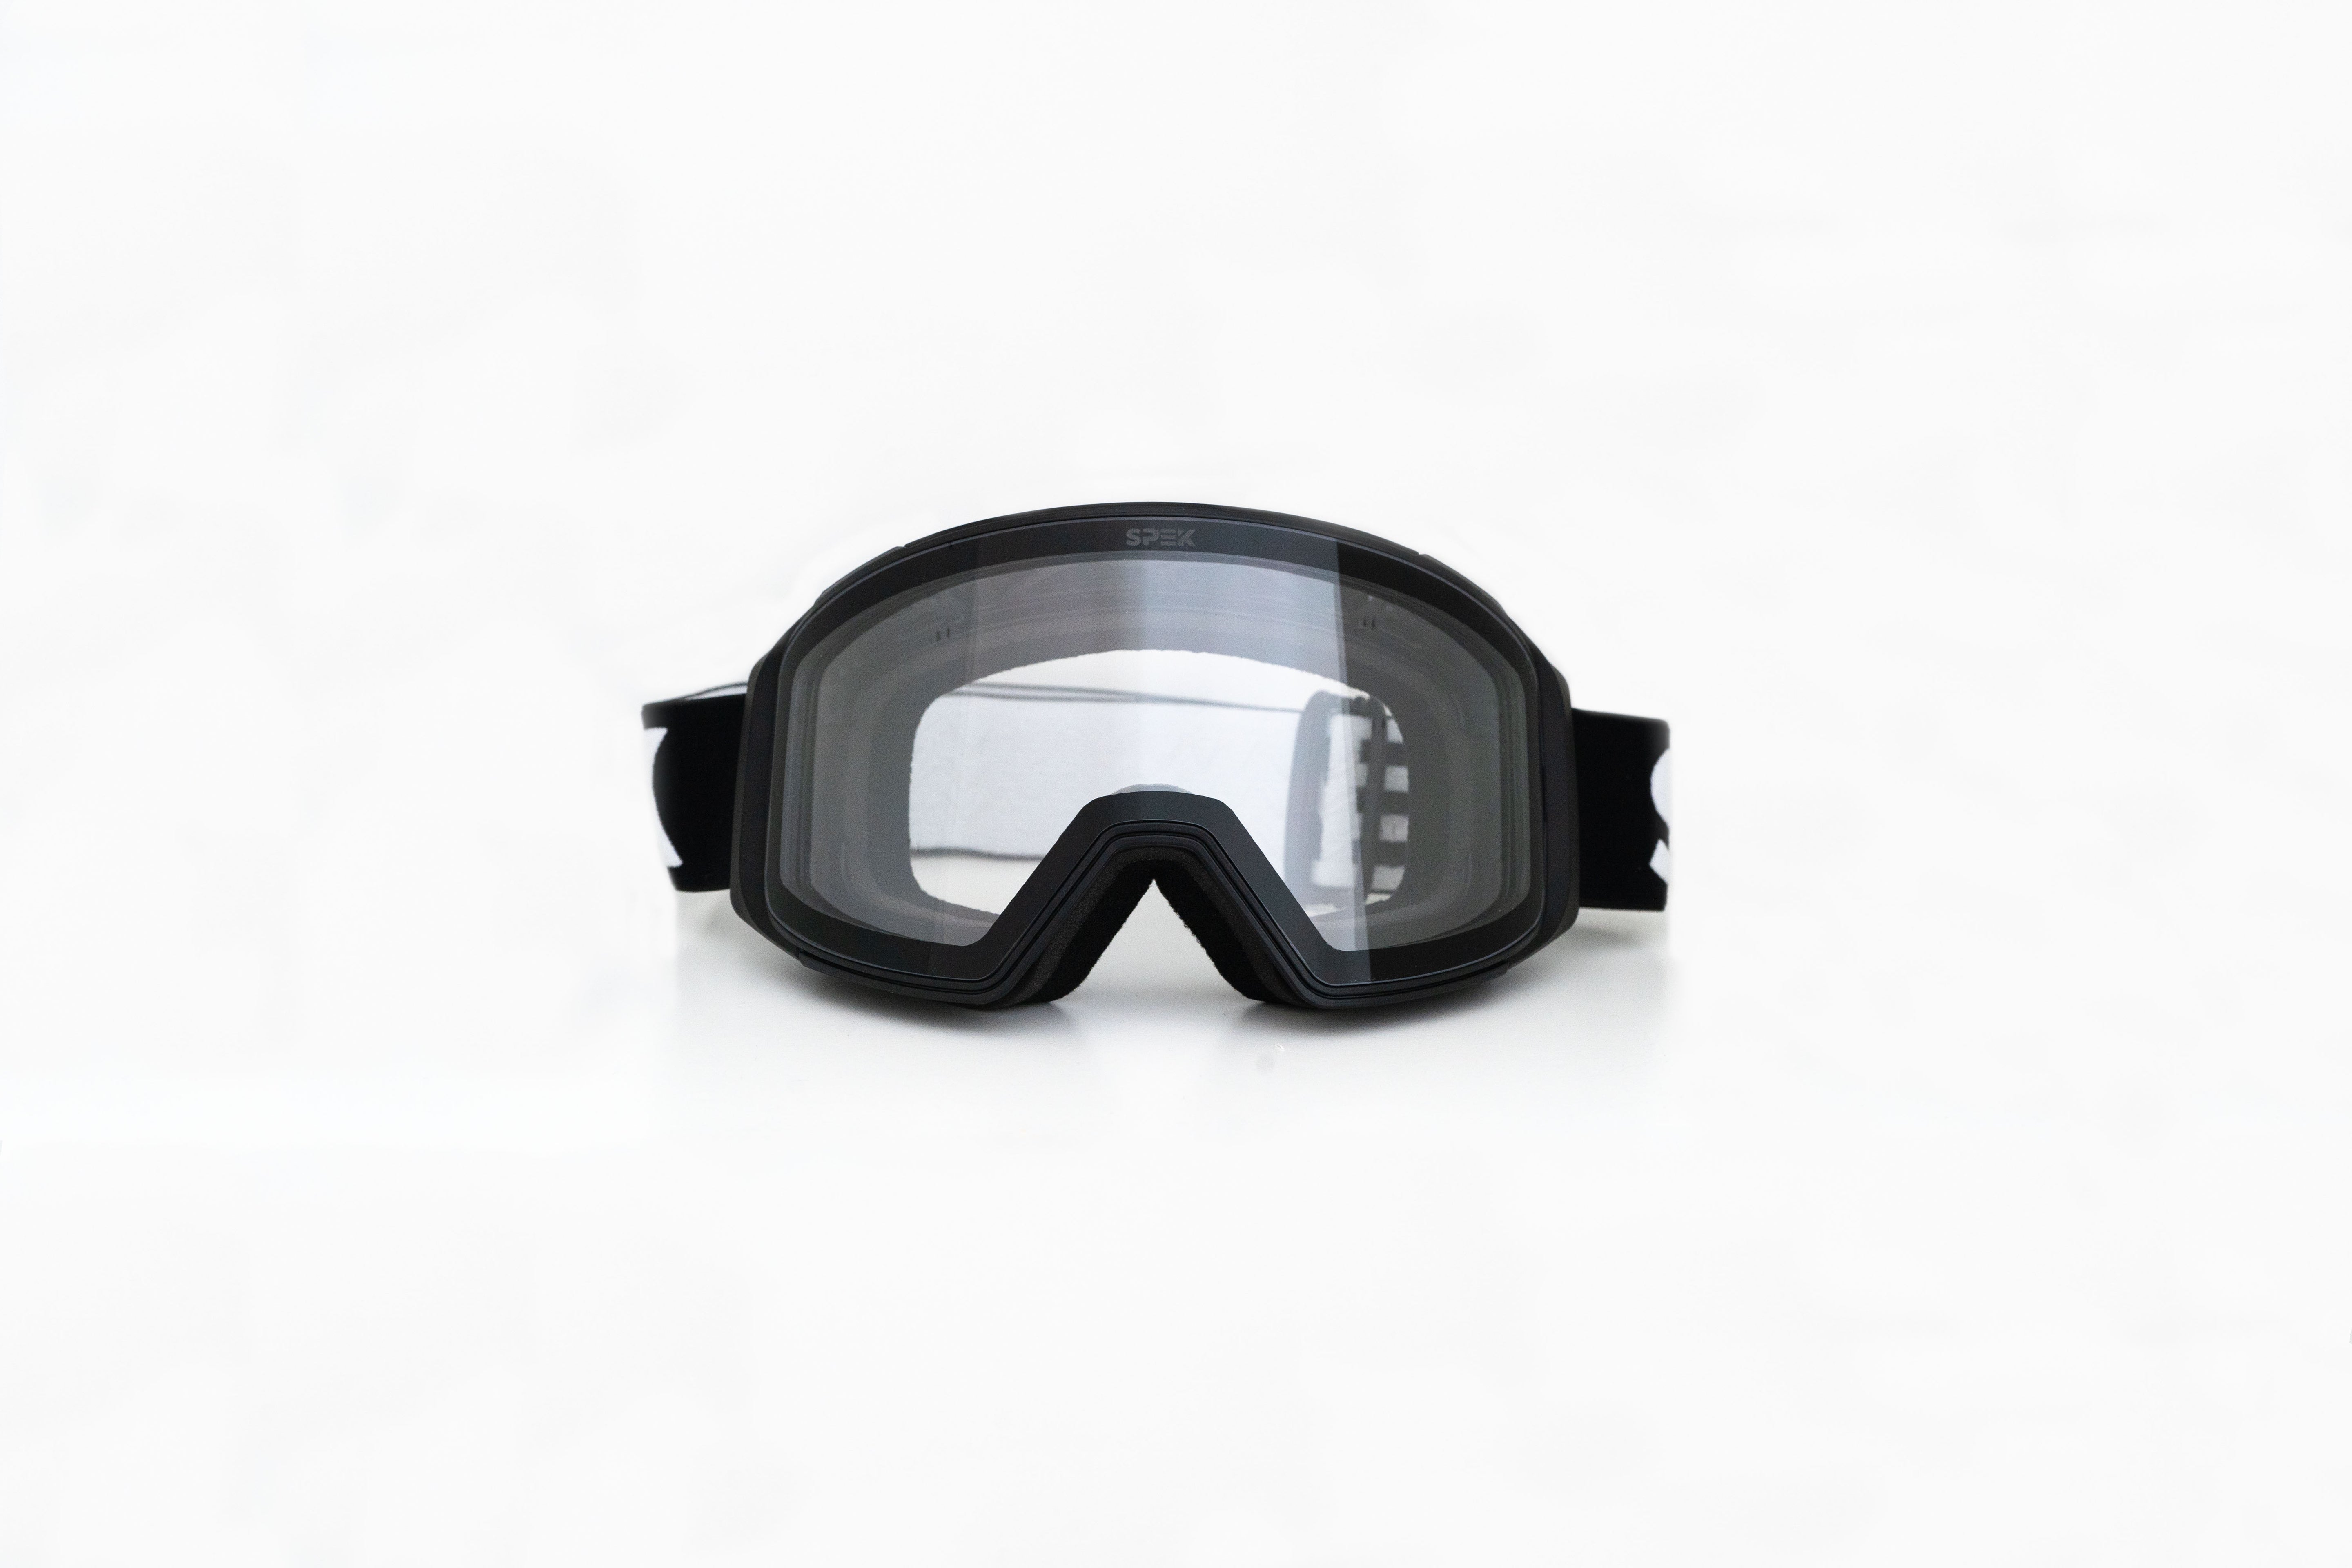 APEX ski goggles